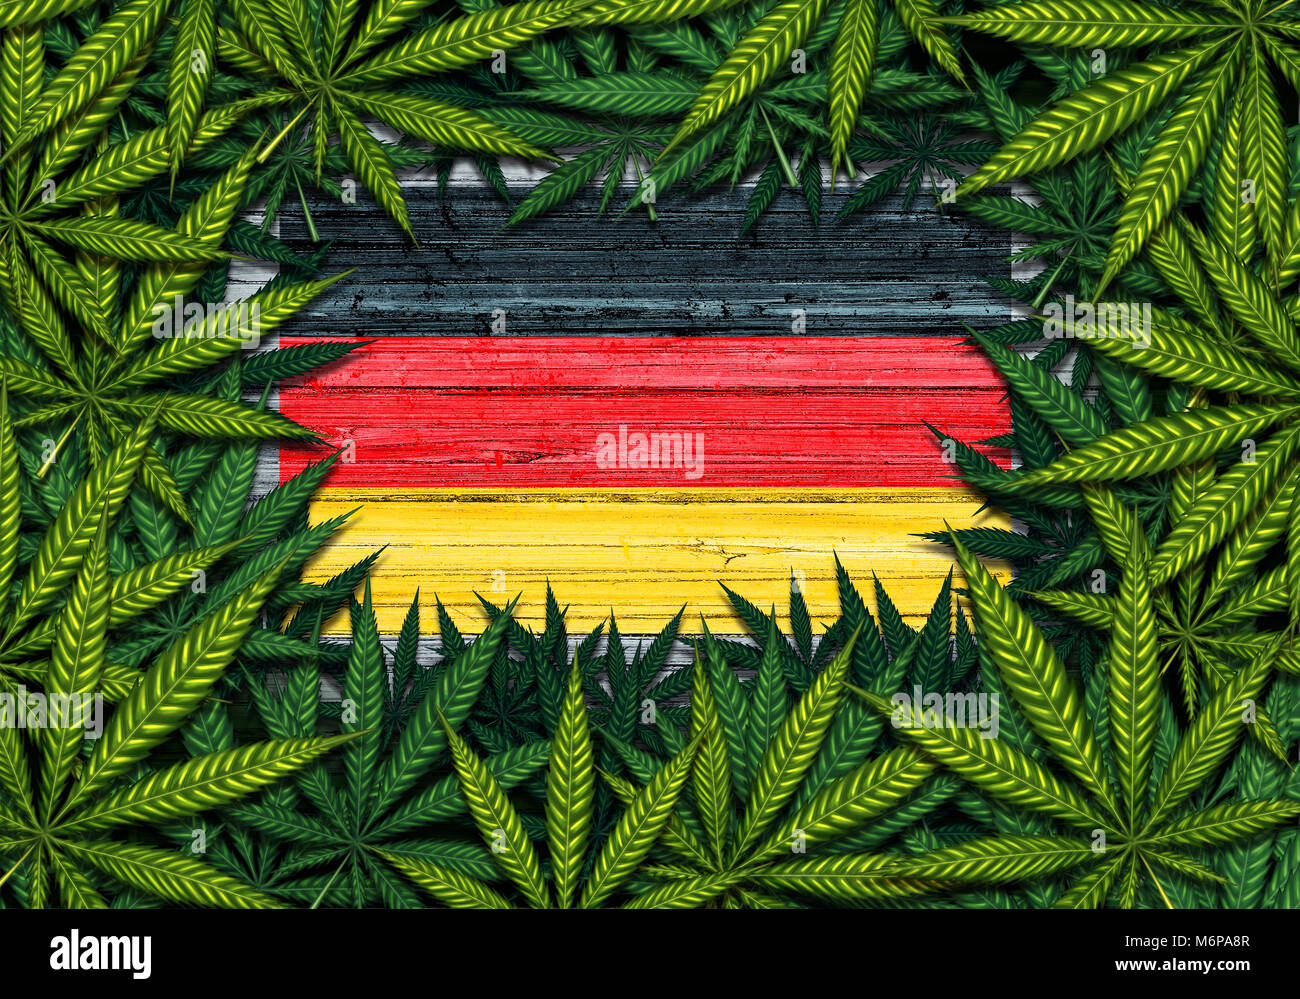 Deutschland Marihuana und Deutsche cannabis Symbol mit der Flagge auf rustikalem Holz mit Blättern als Grenze in einer 3D-Darstellung. Stockfoto